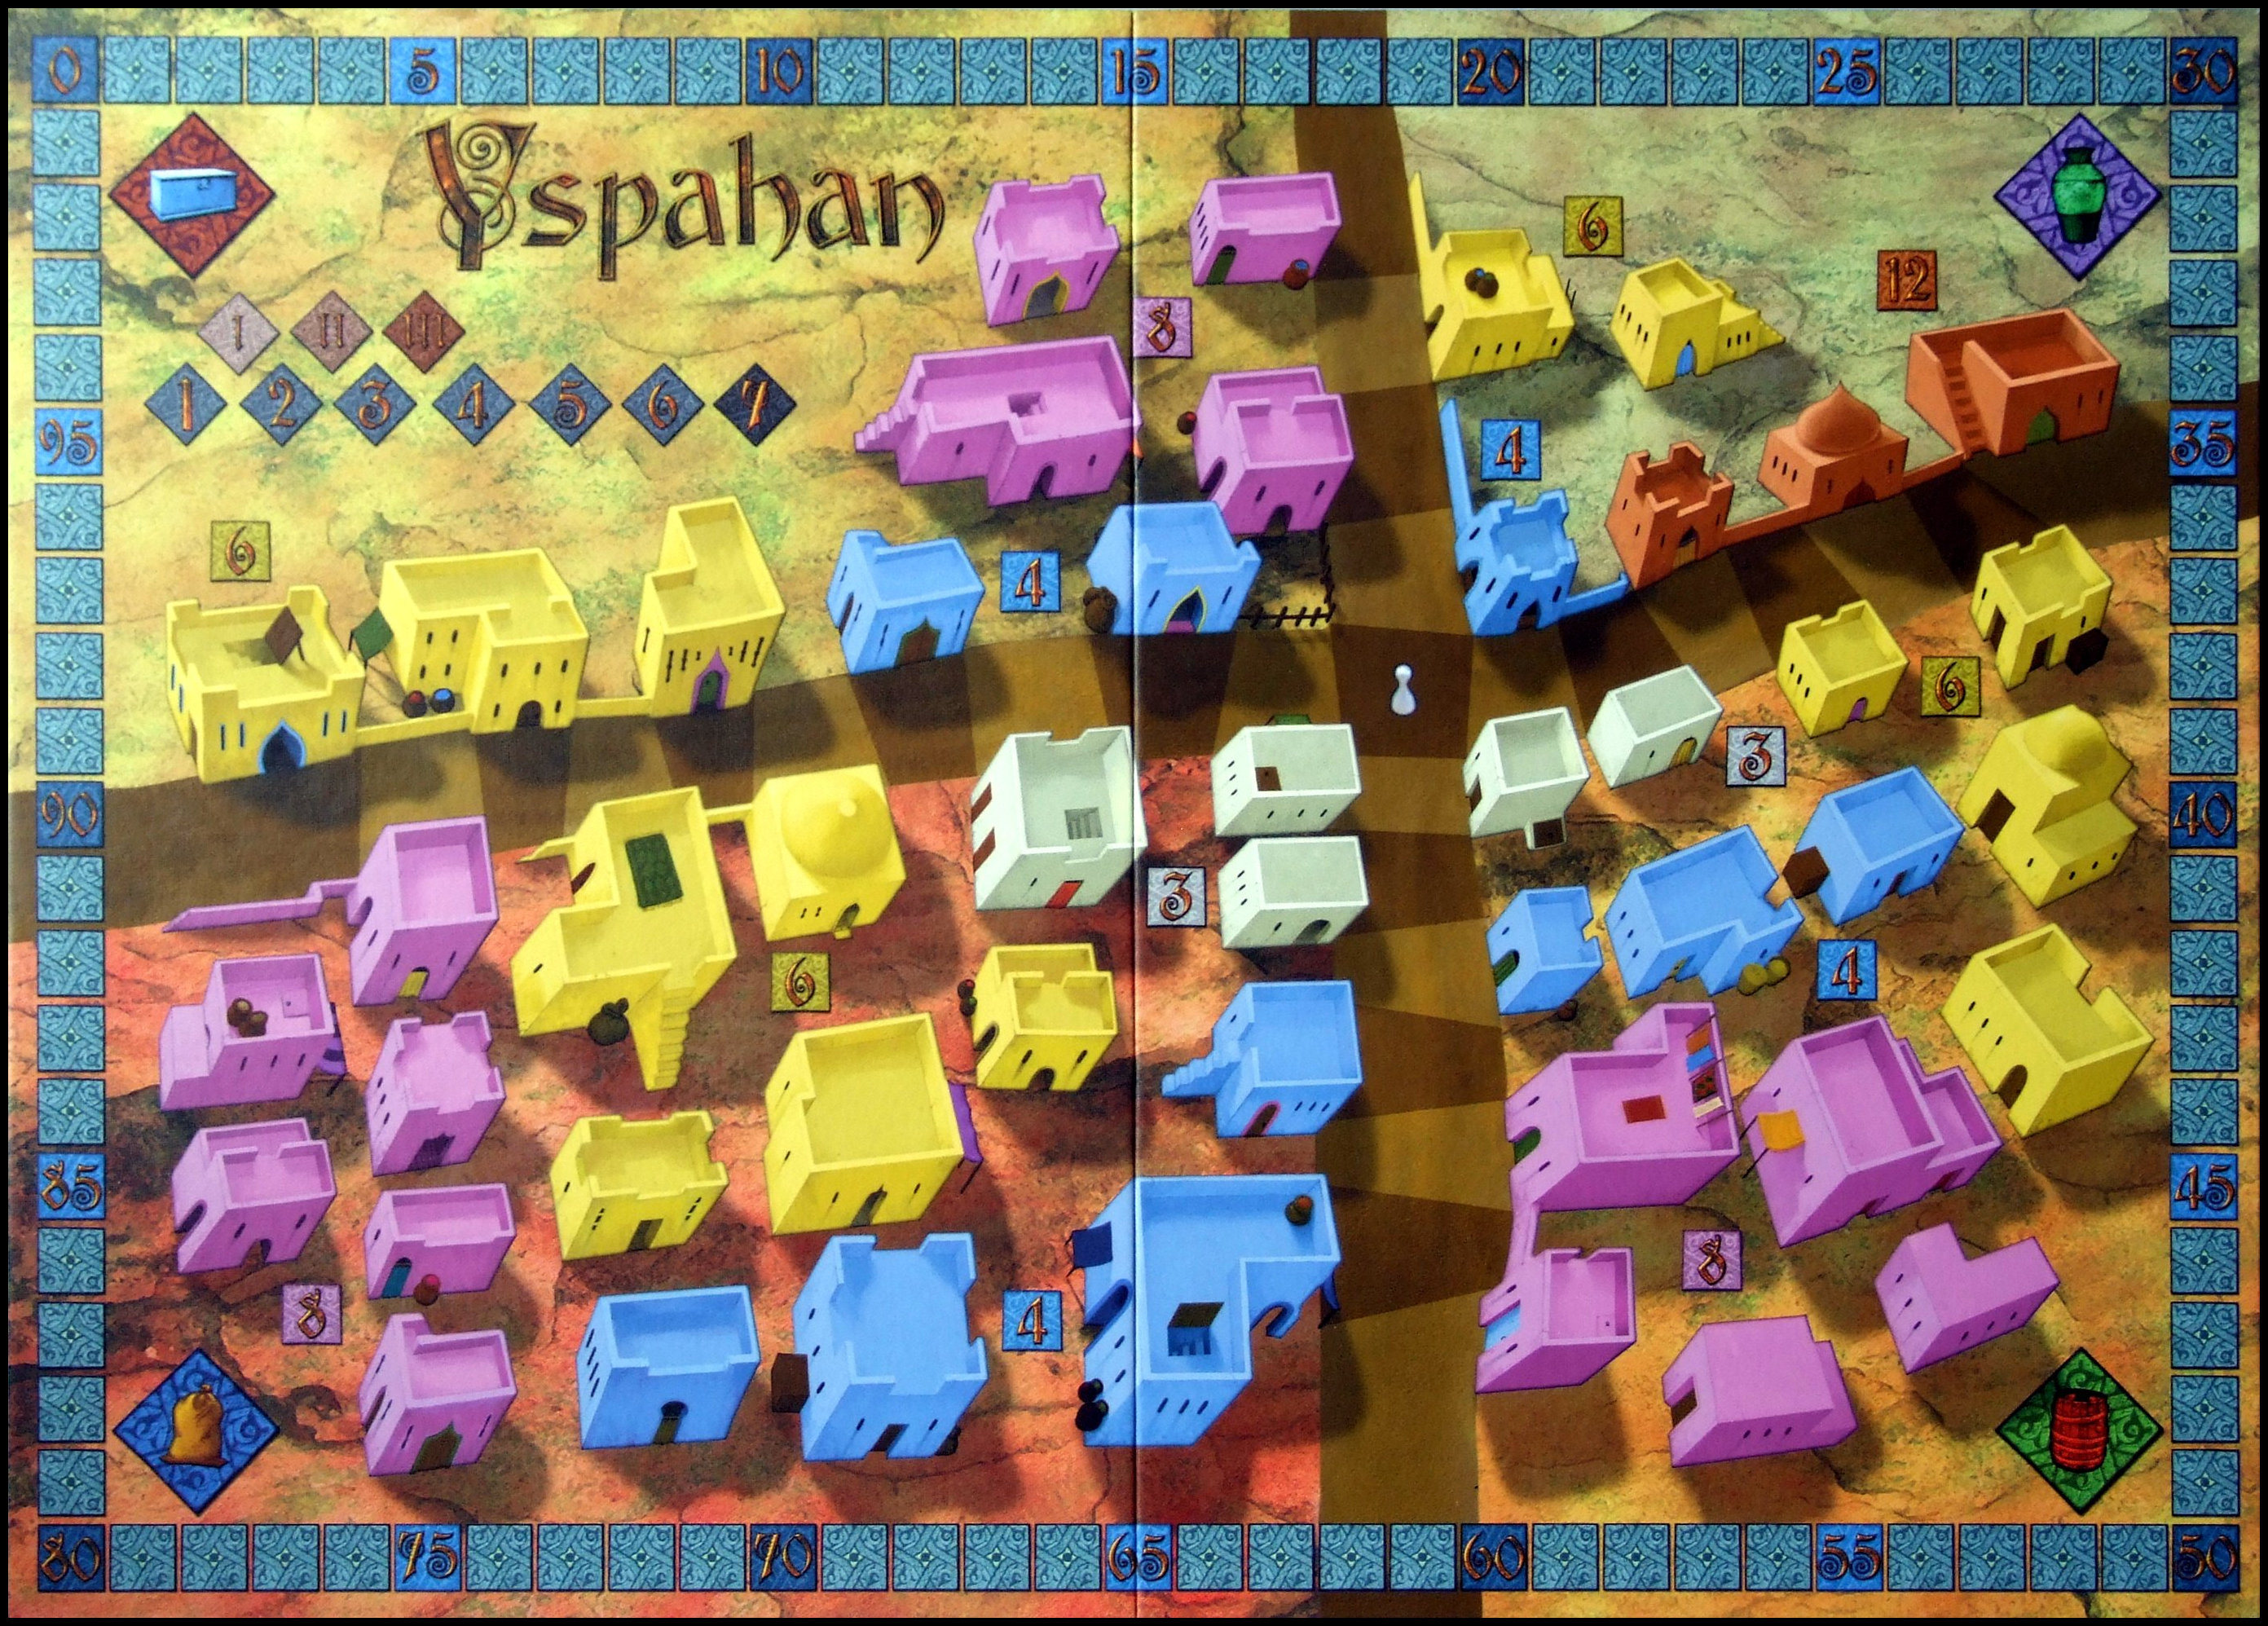 Yspahan - The Main Board